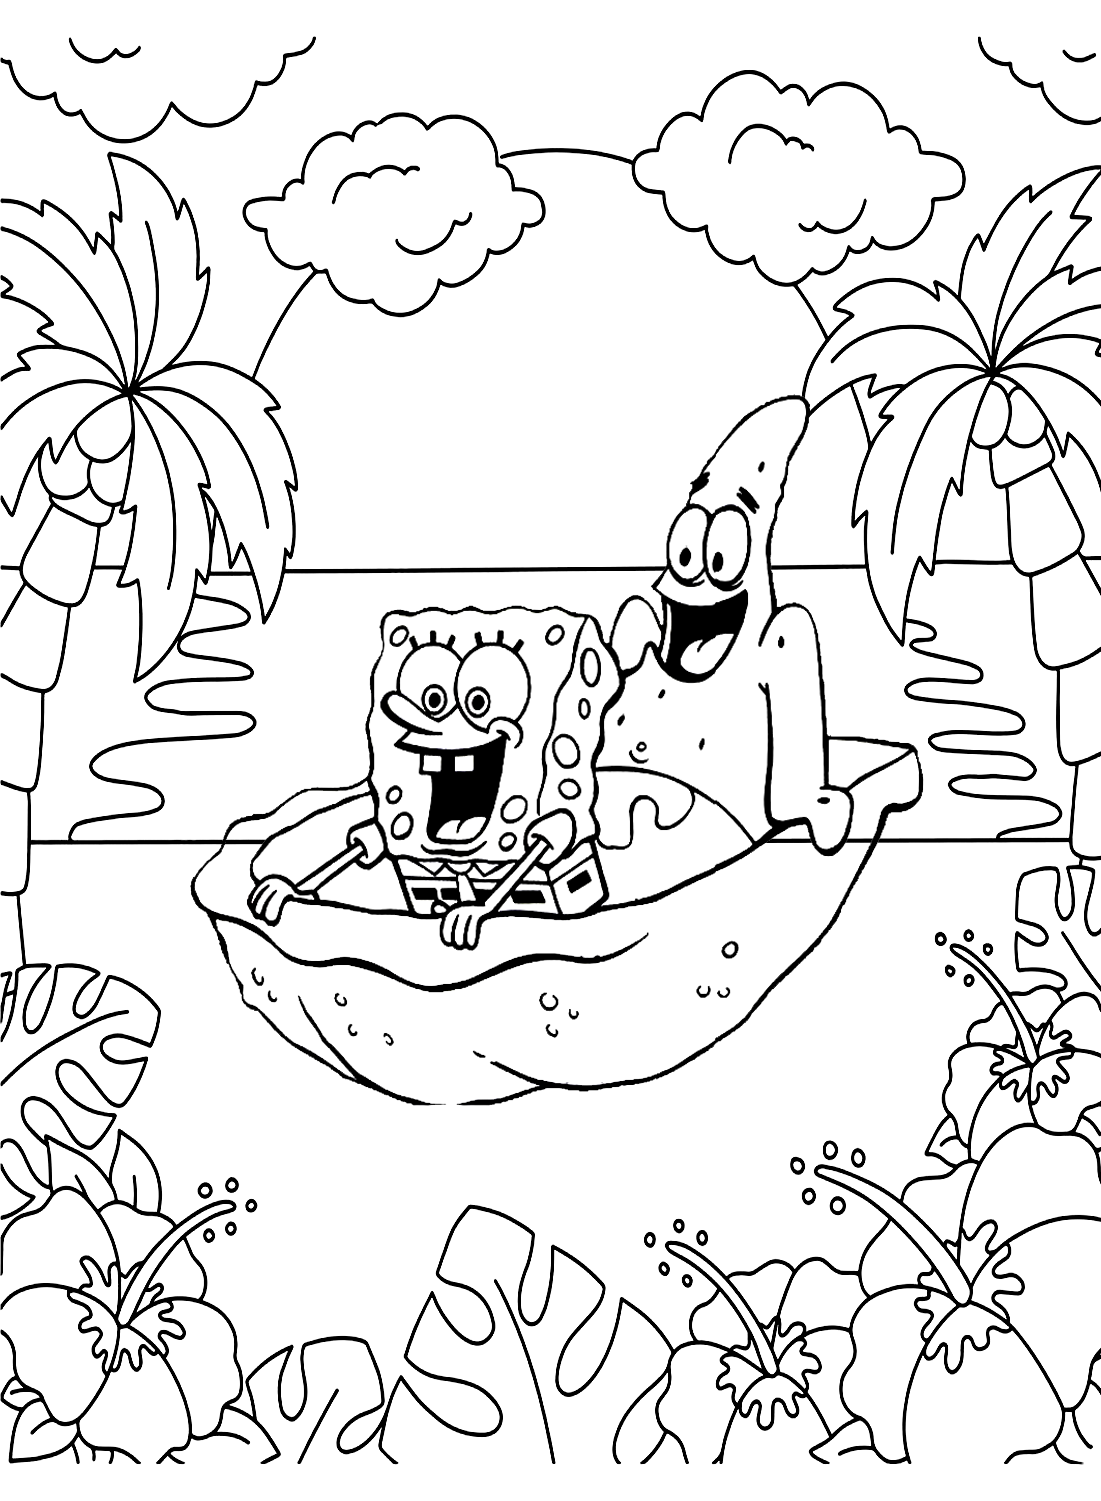 Patrick en Spongebob kleurenpagina van Spongebob